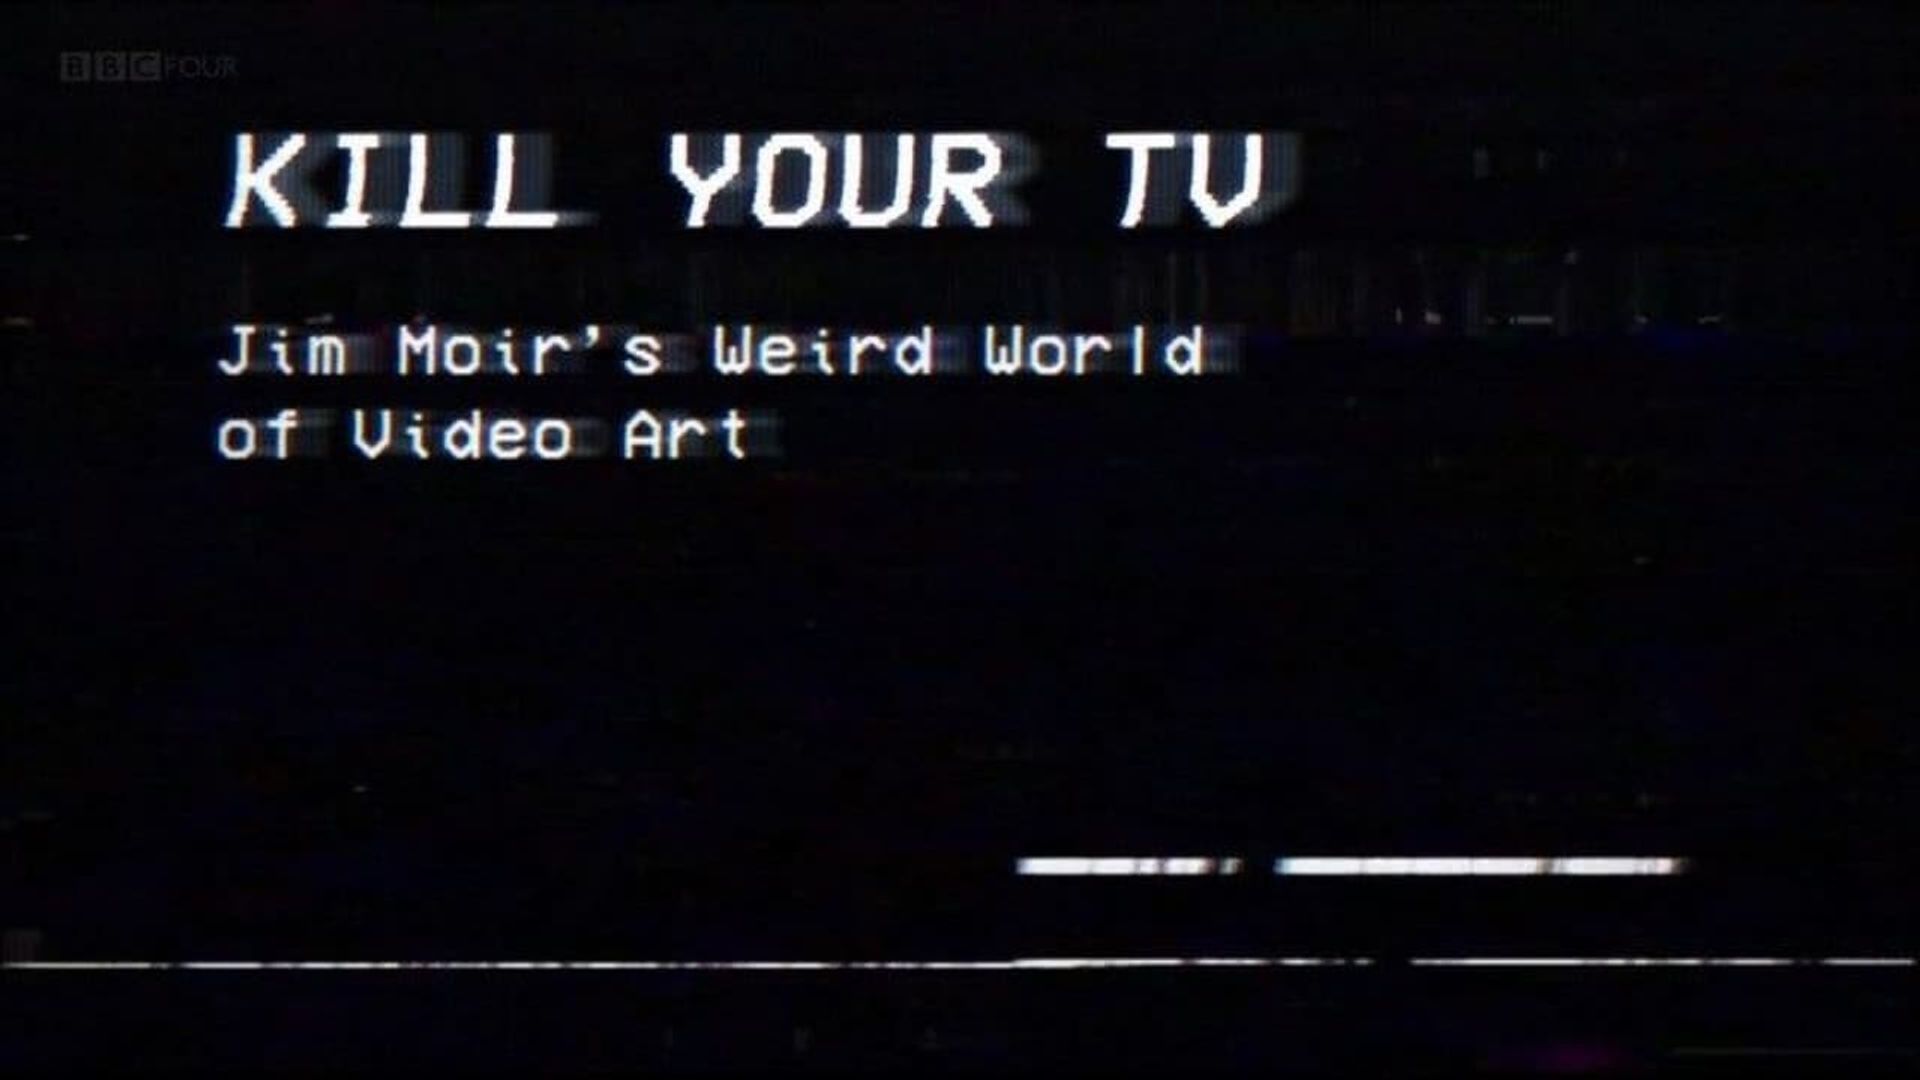 Kill Your TV: Jim Moir's Weird World of Video Art background